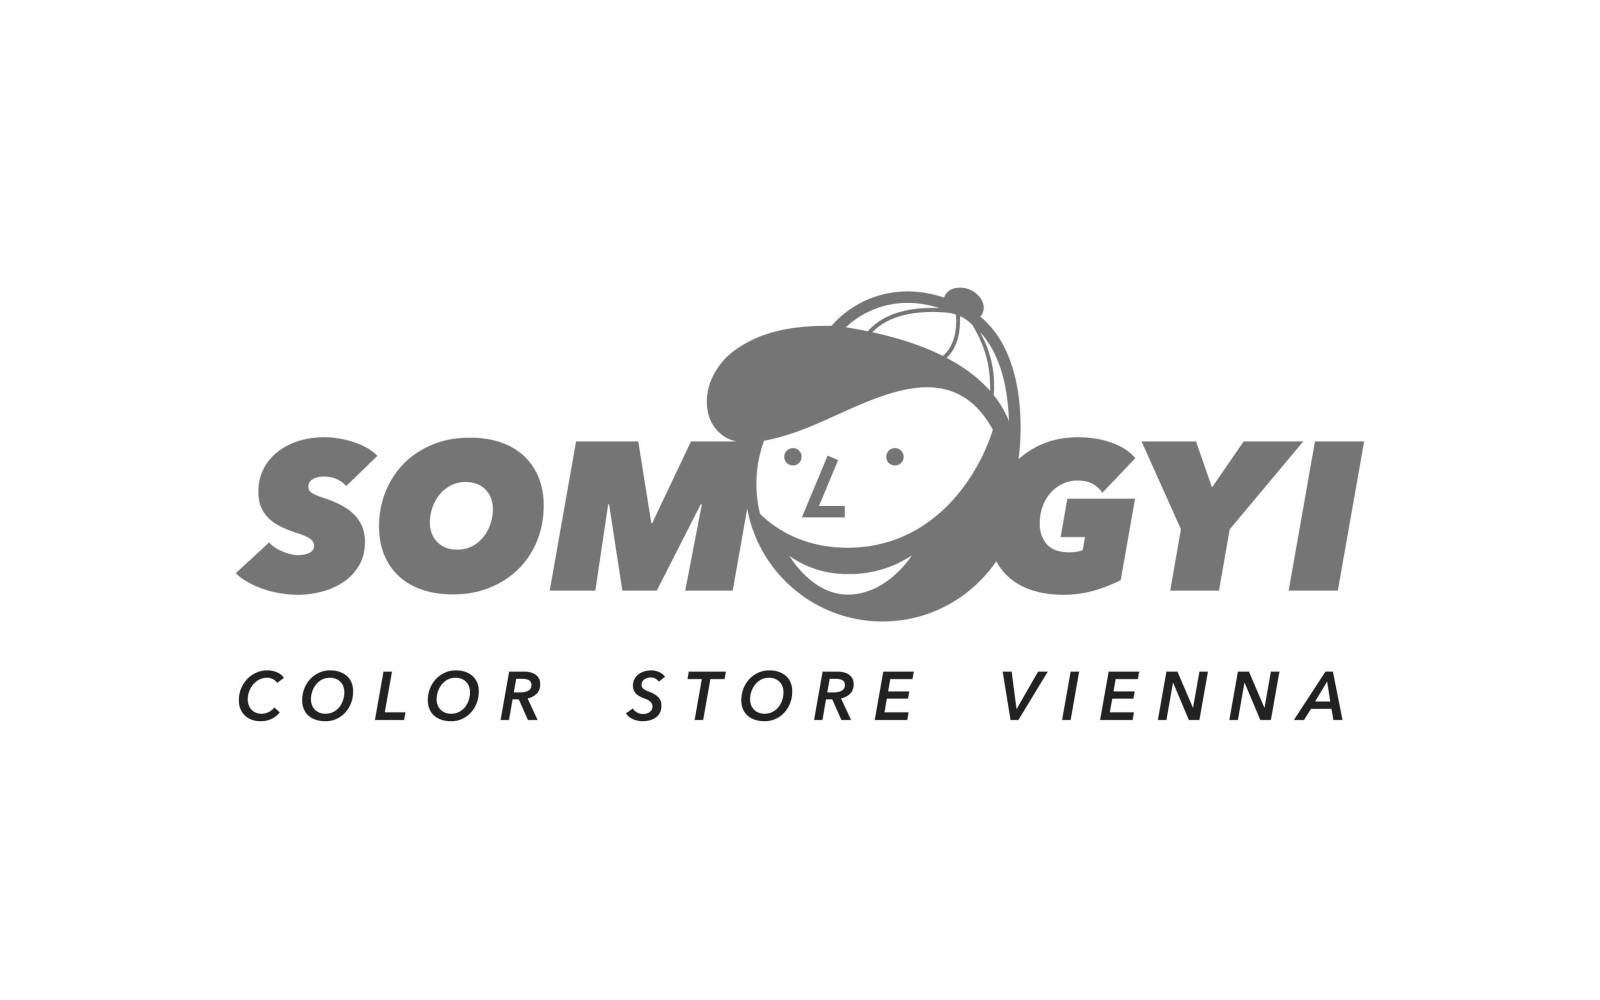 somogyi_logo